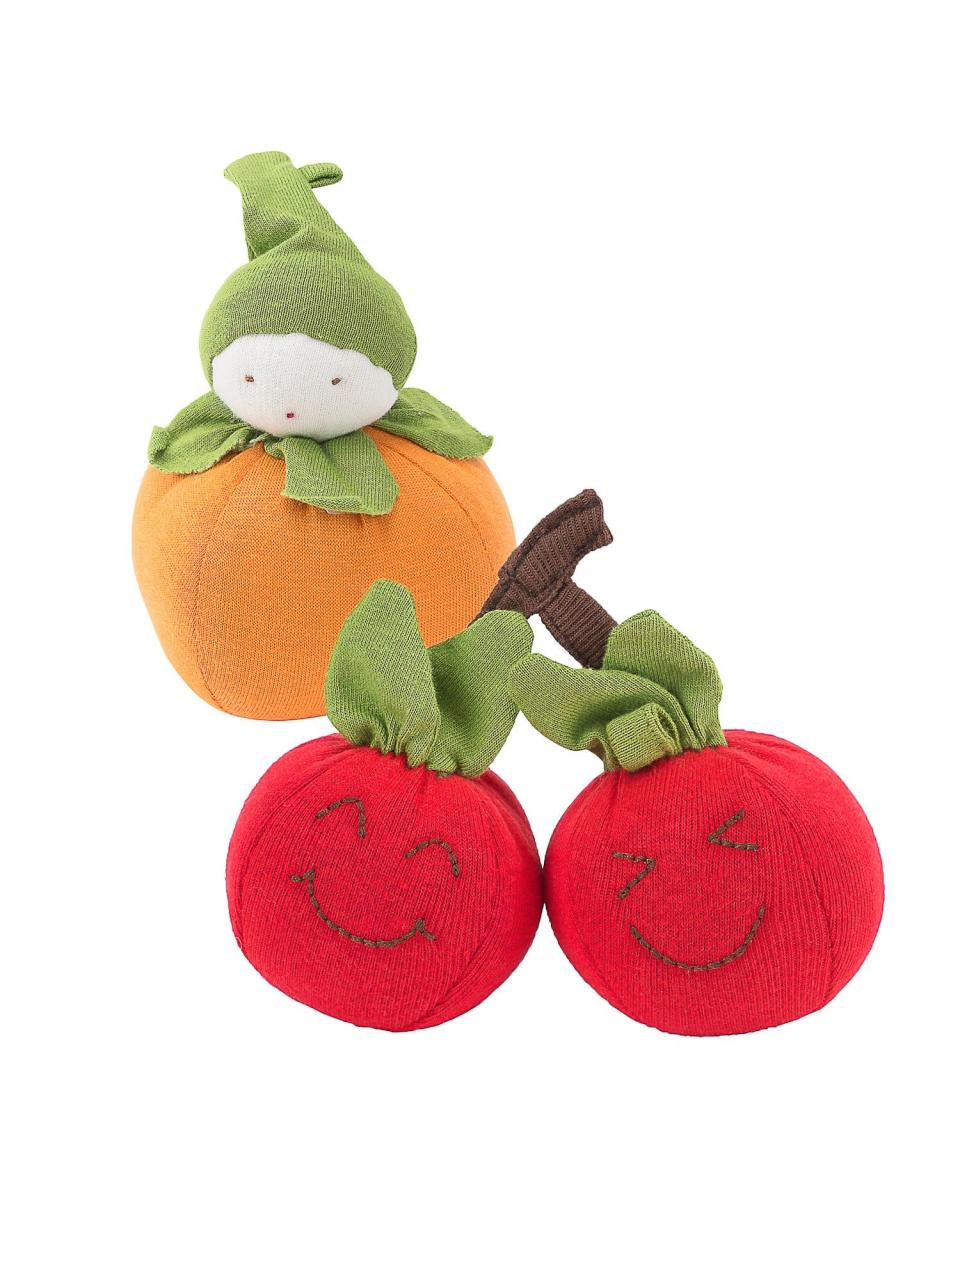 Under the Nile Orange and Cherry Fruit Toy Set